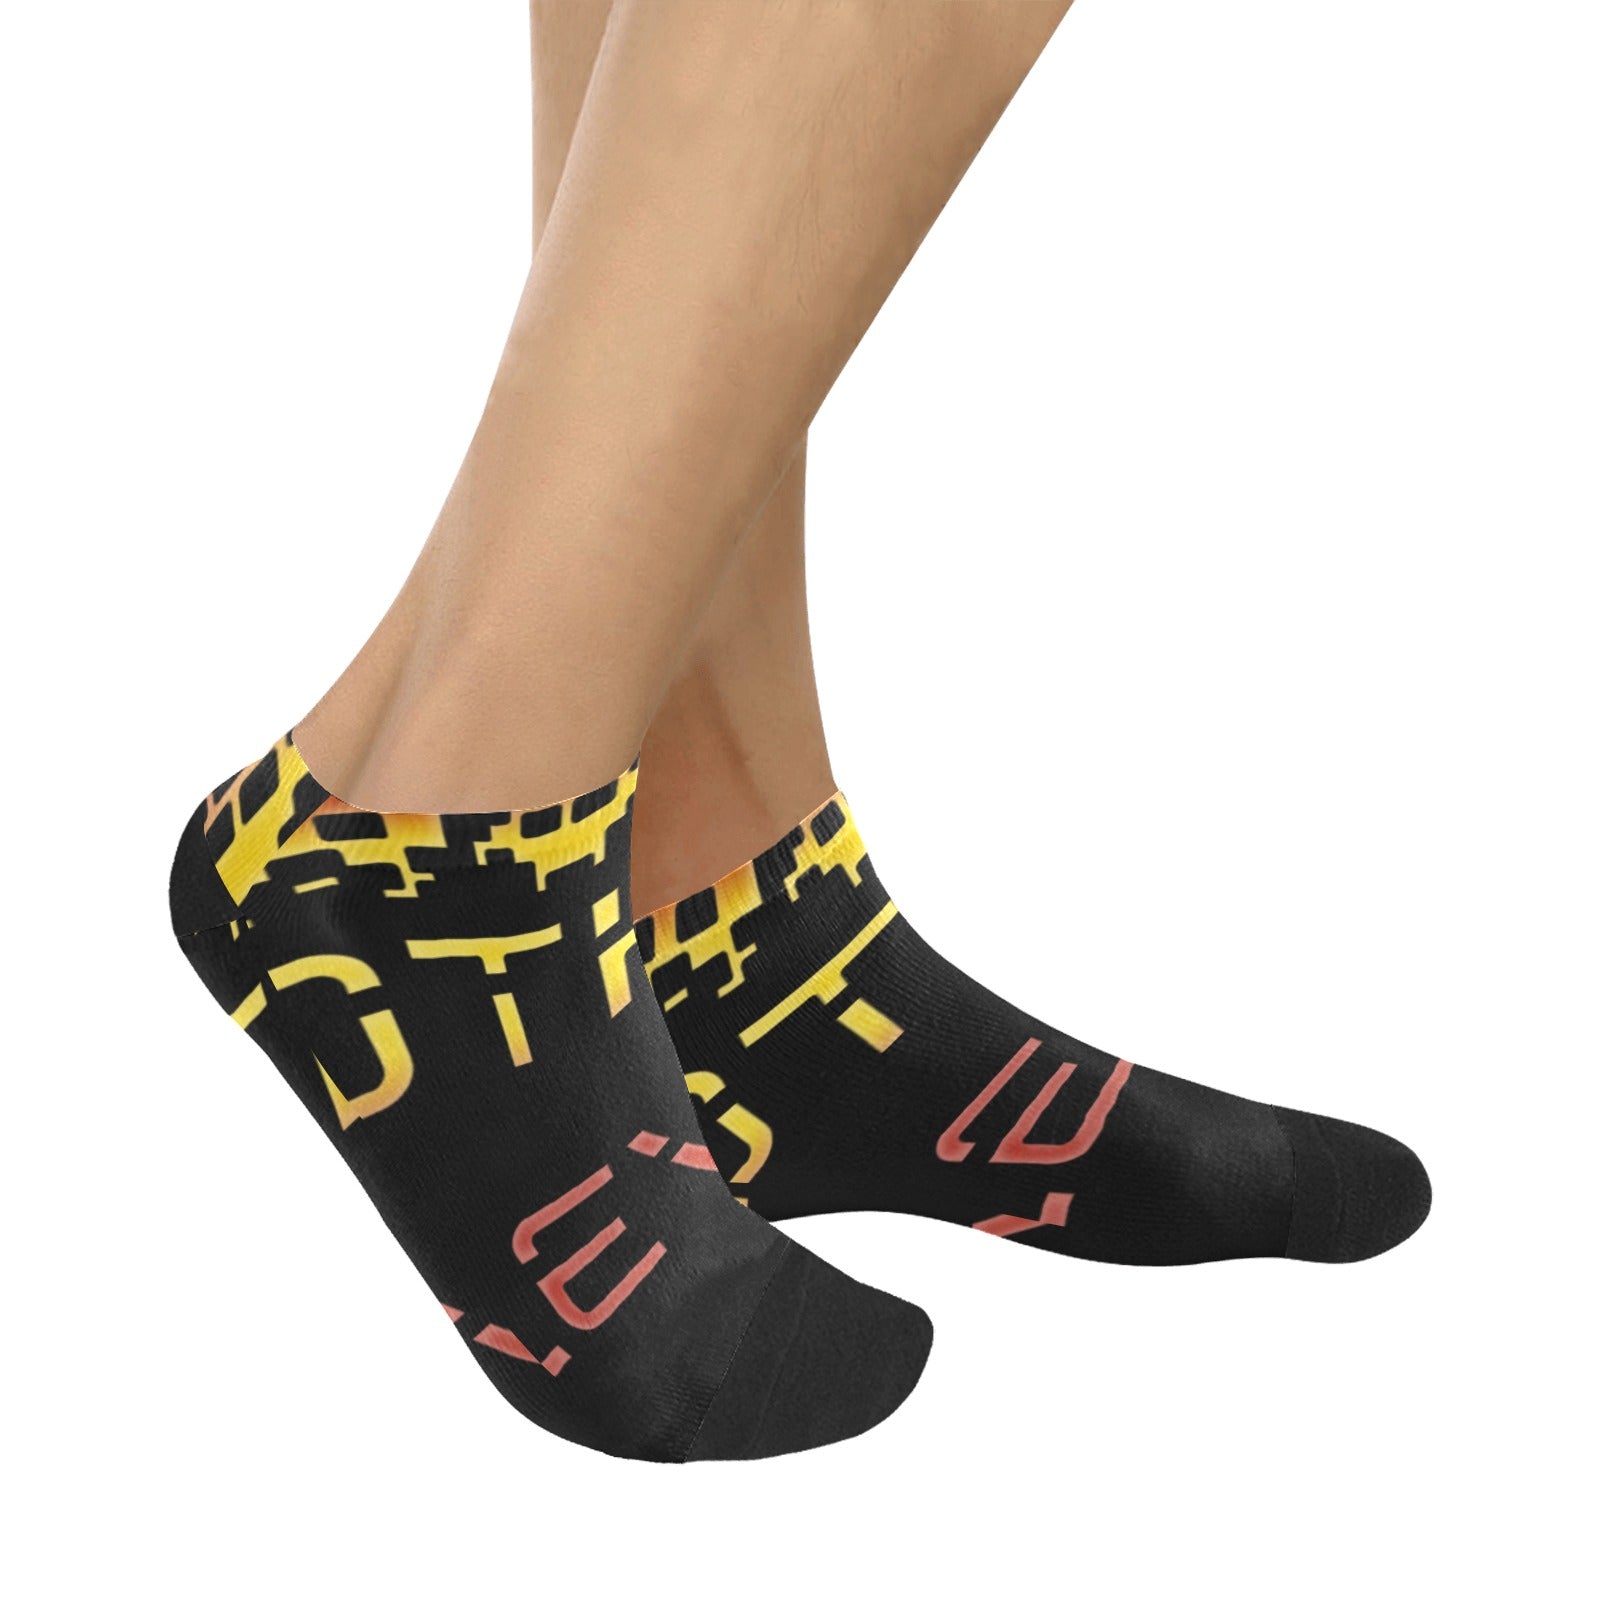 fz men's levels ankle socks one size / fz levels socks - black men's ankle socks